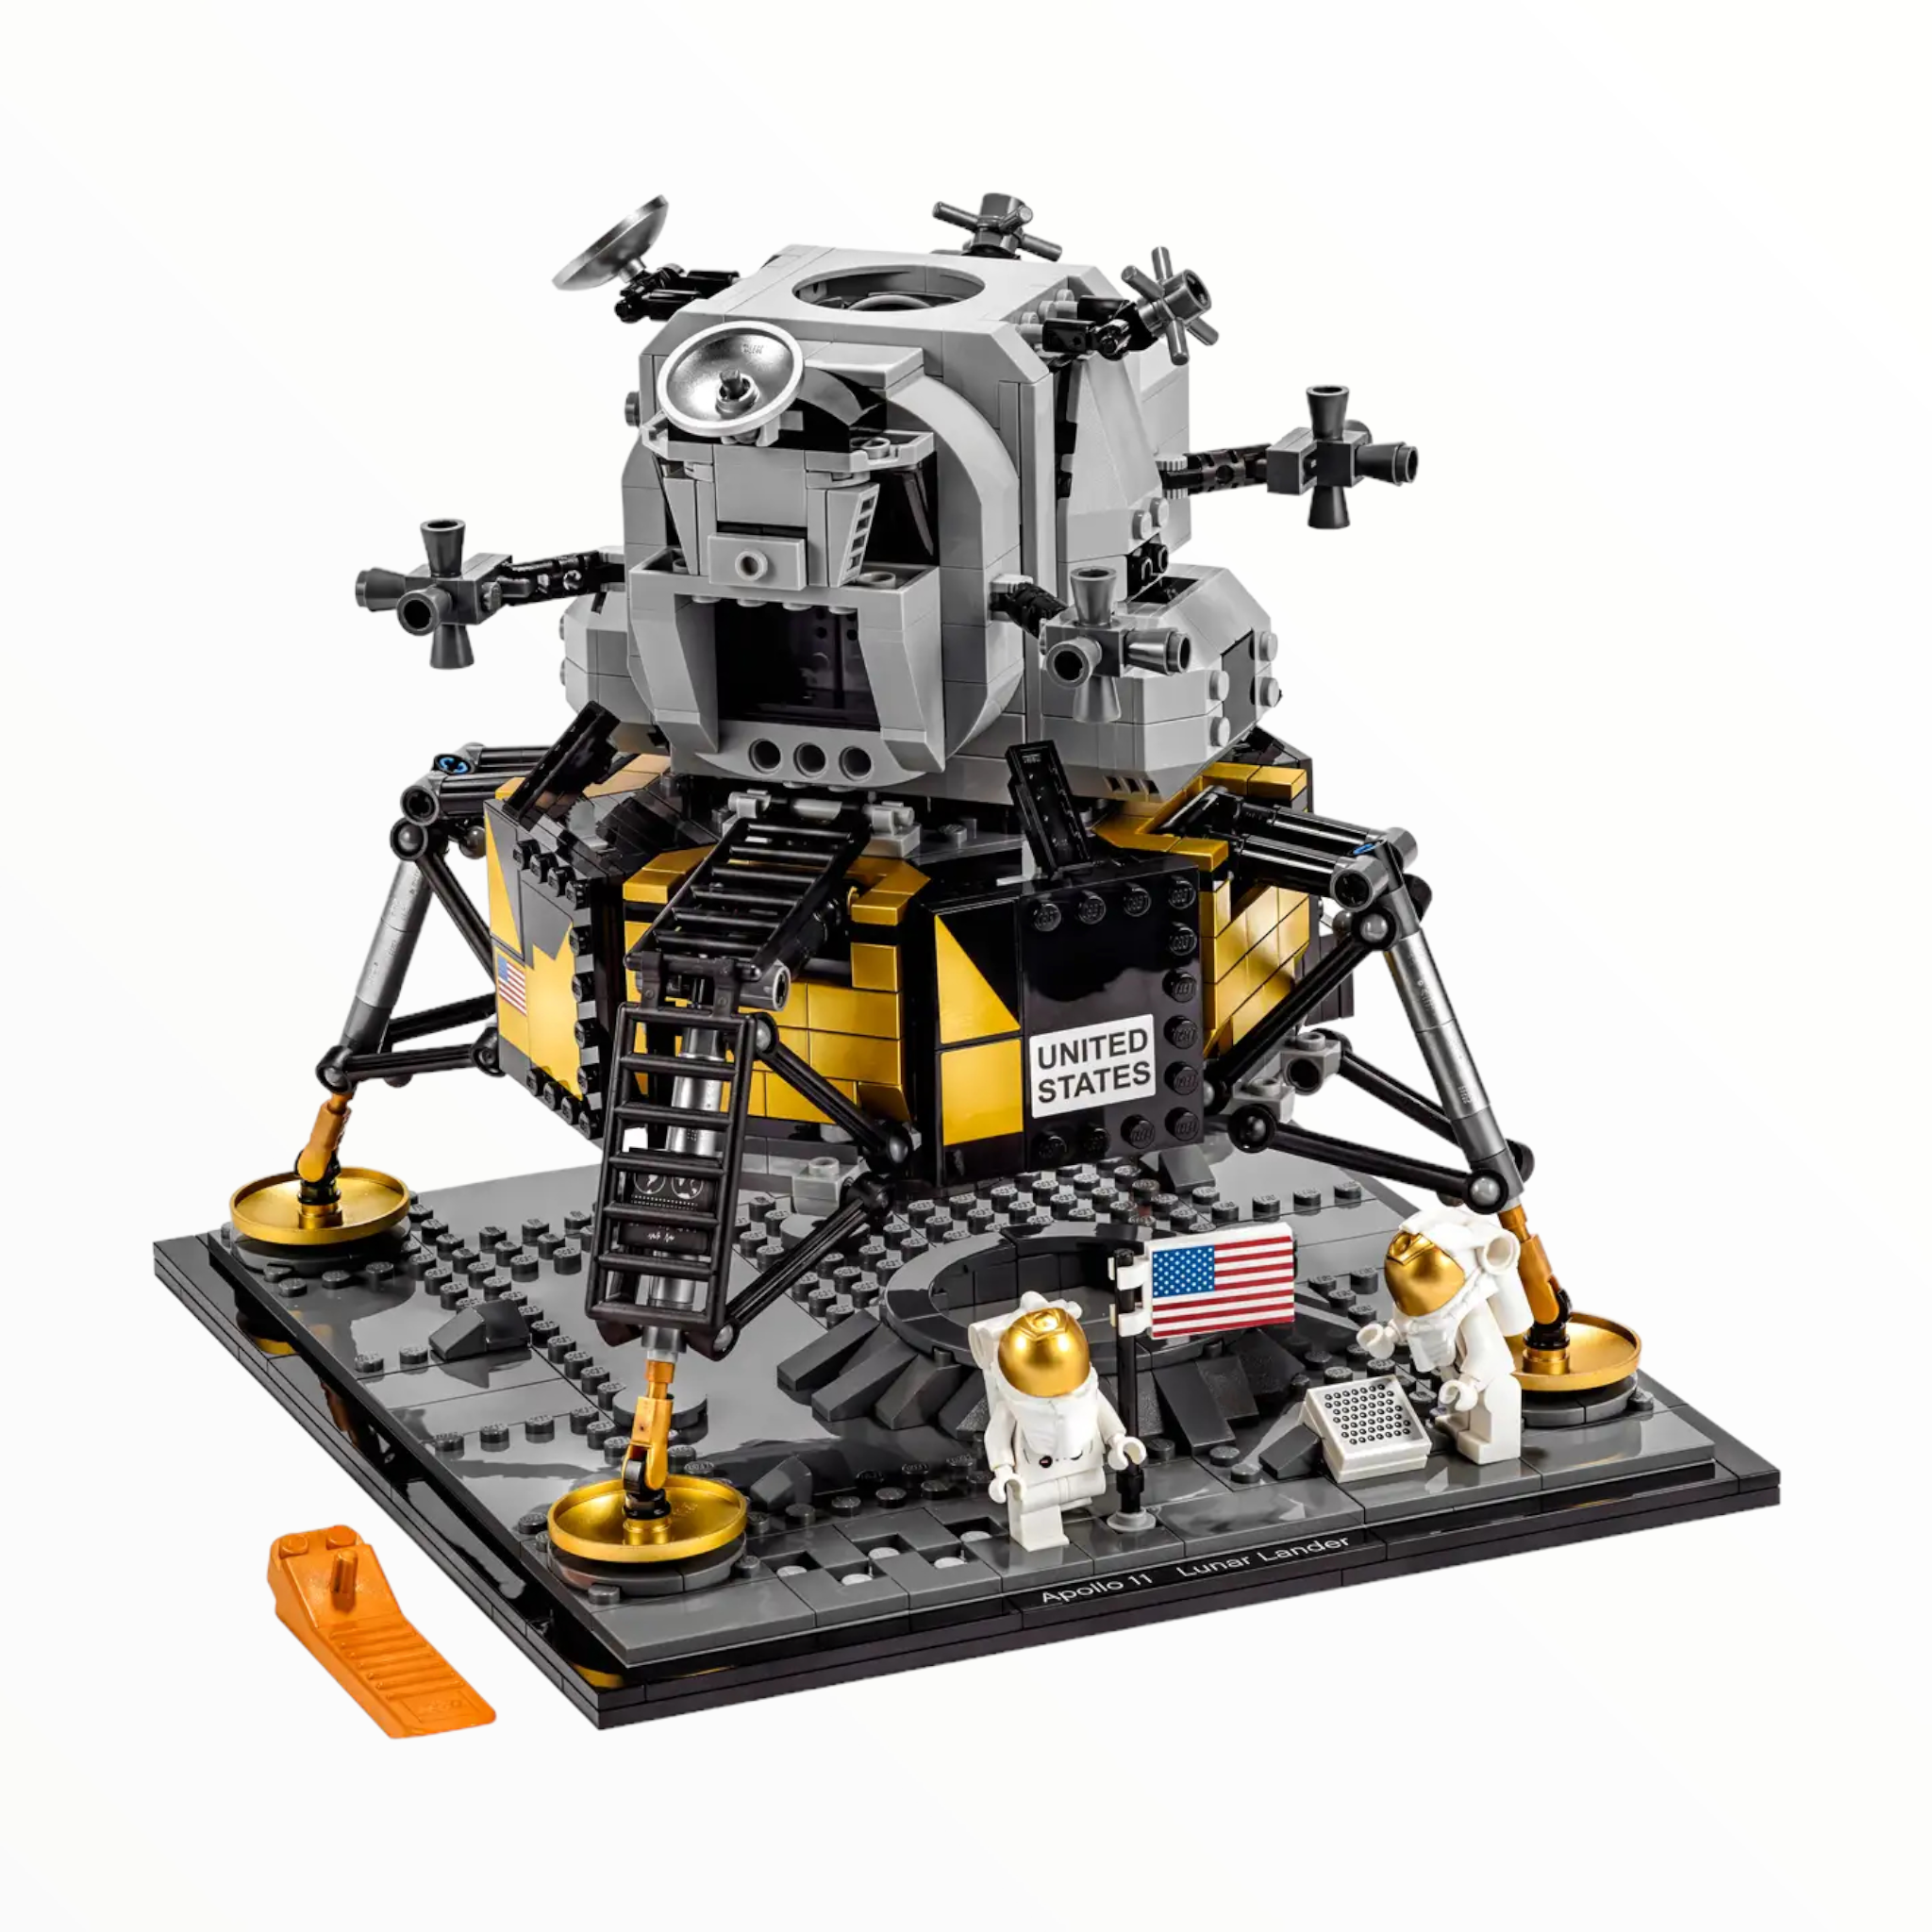 10266 Creator NASA Apollo 11 Lunar Lander